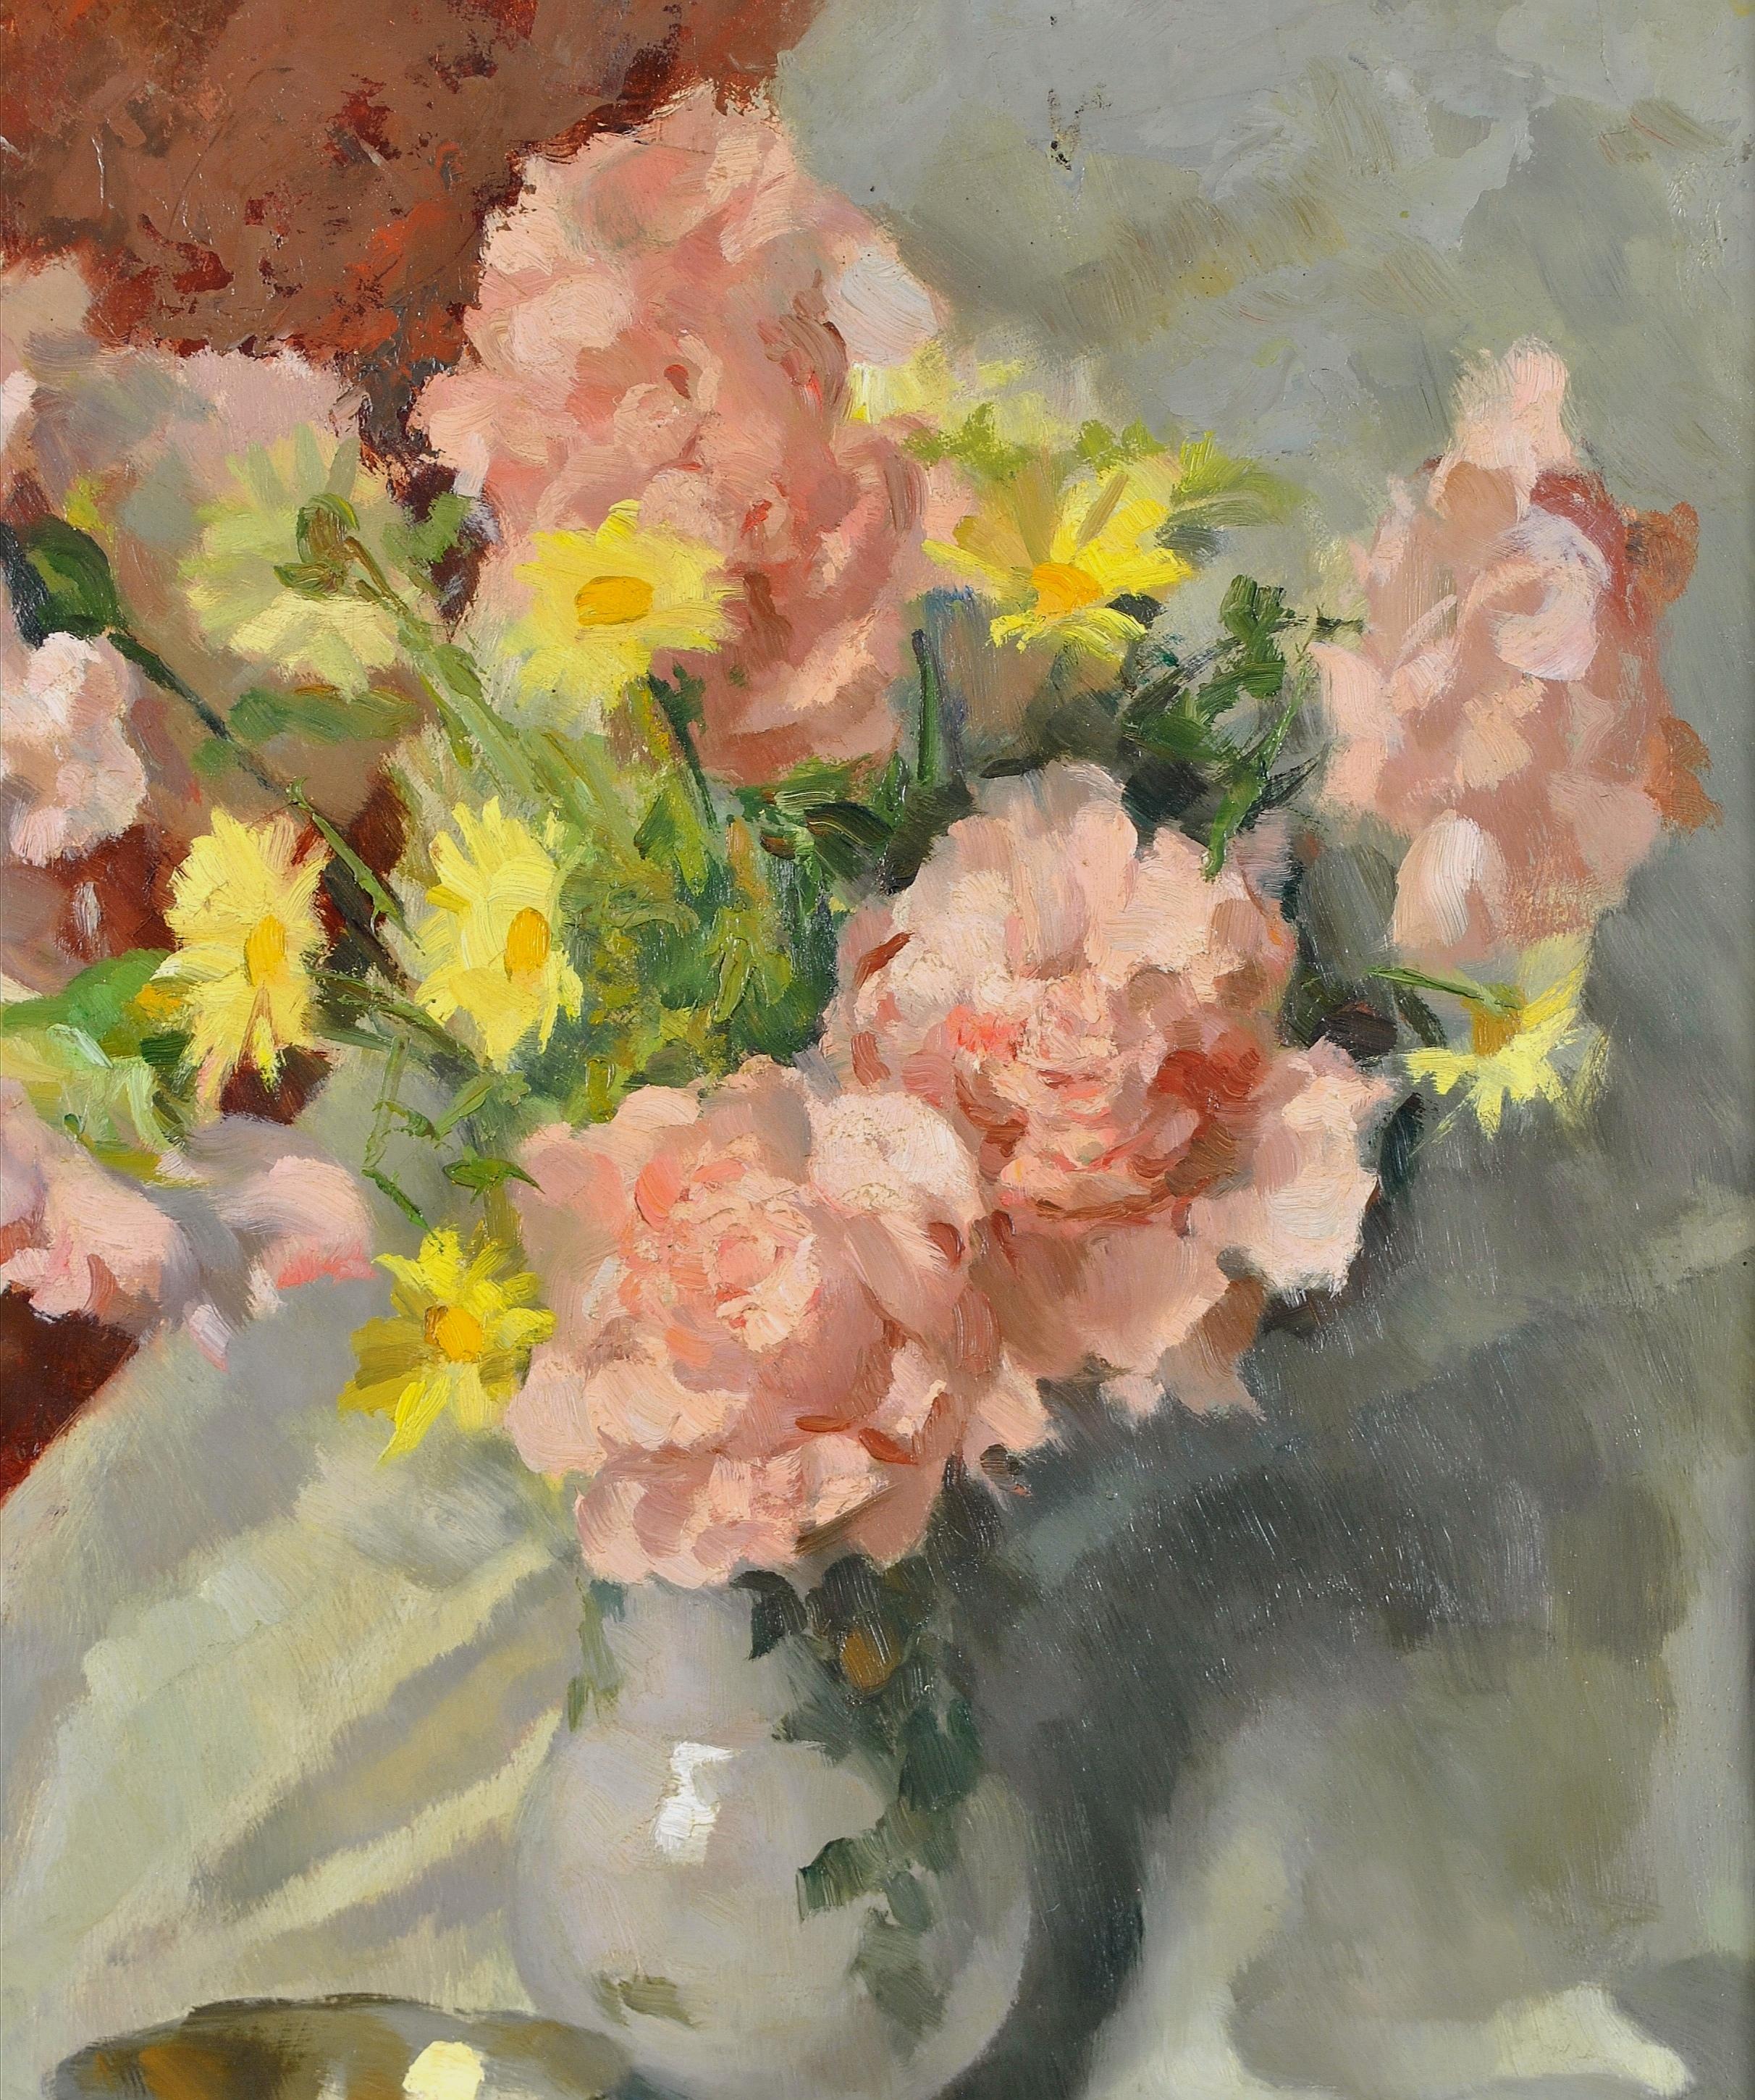 Roses et fleurs sauvages - Nature morte impressionniste italienne du 20e siècle - Impressionnisme Painting par Carlo Marzorati